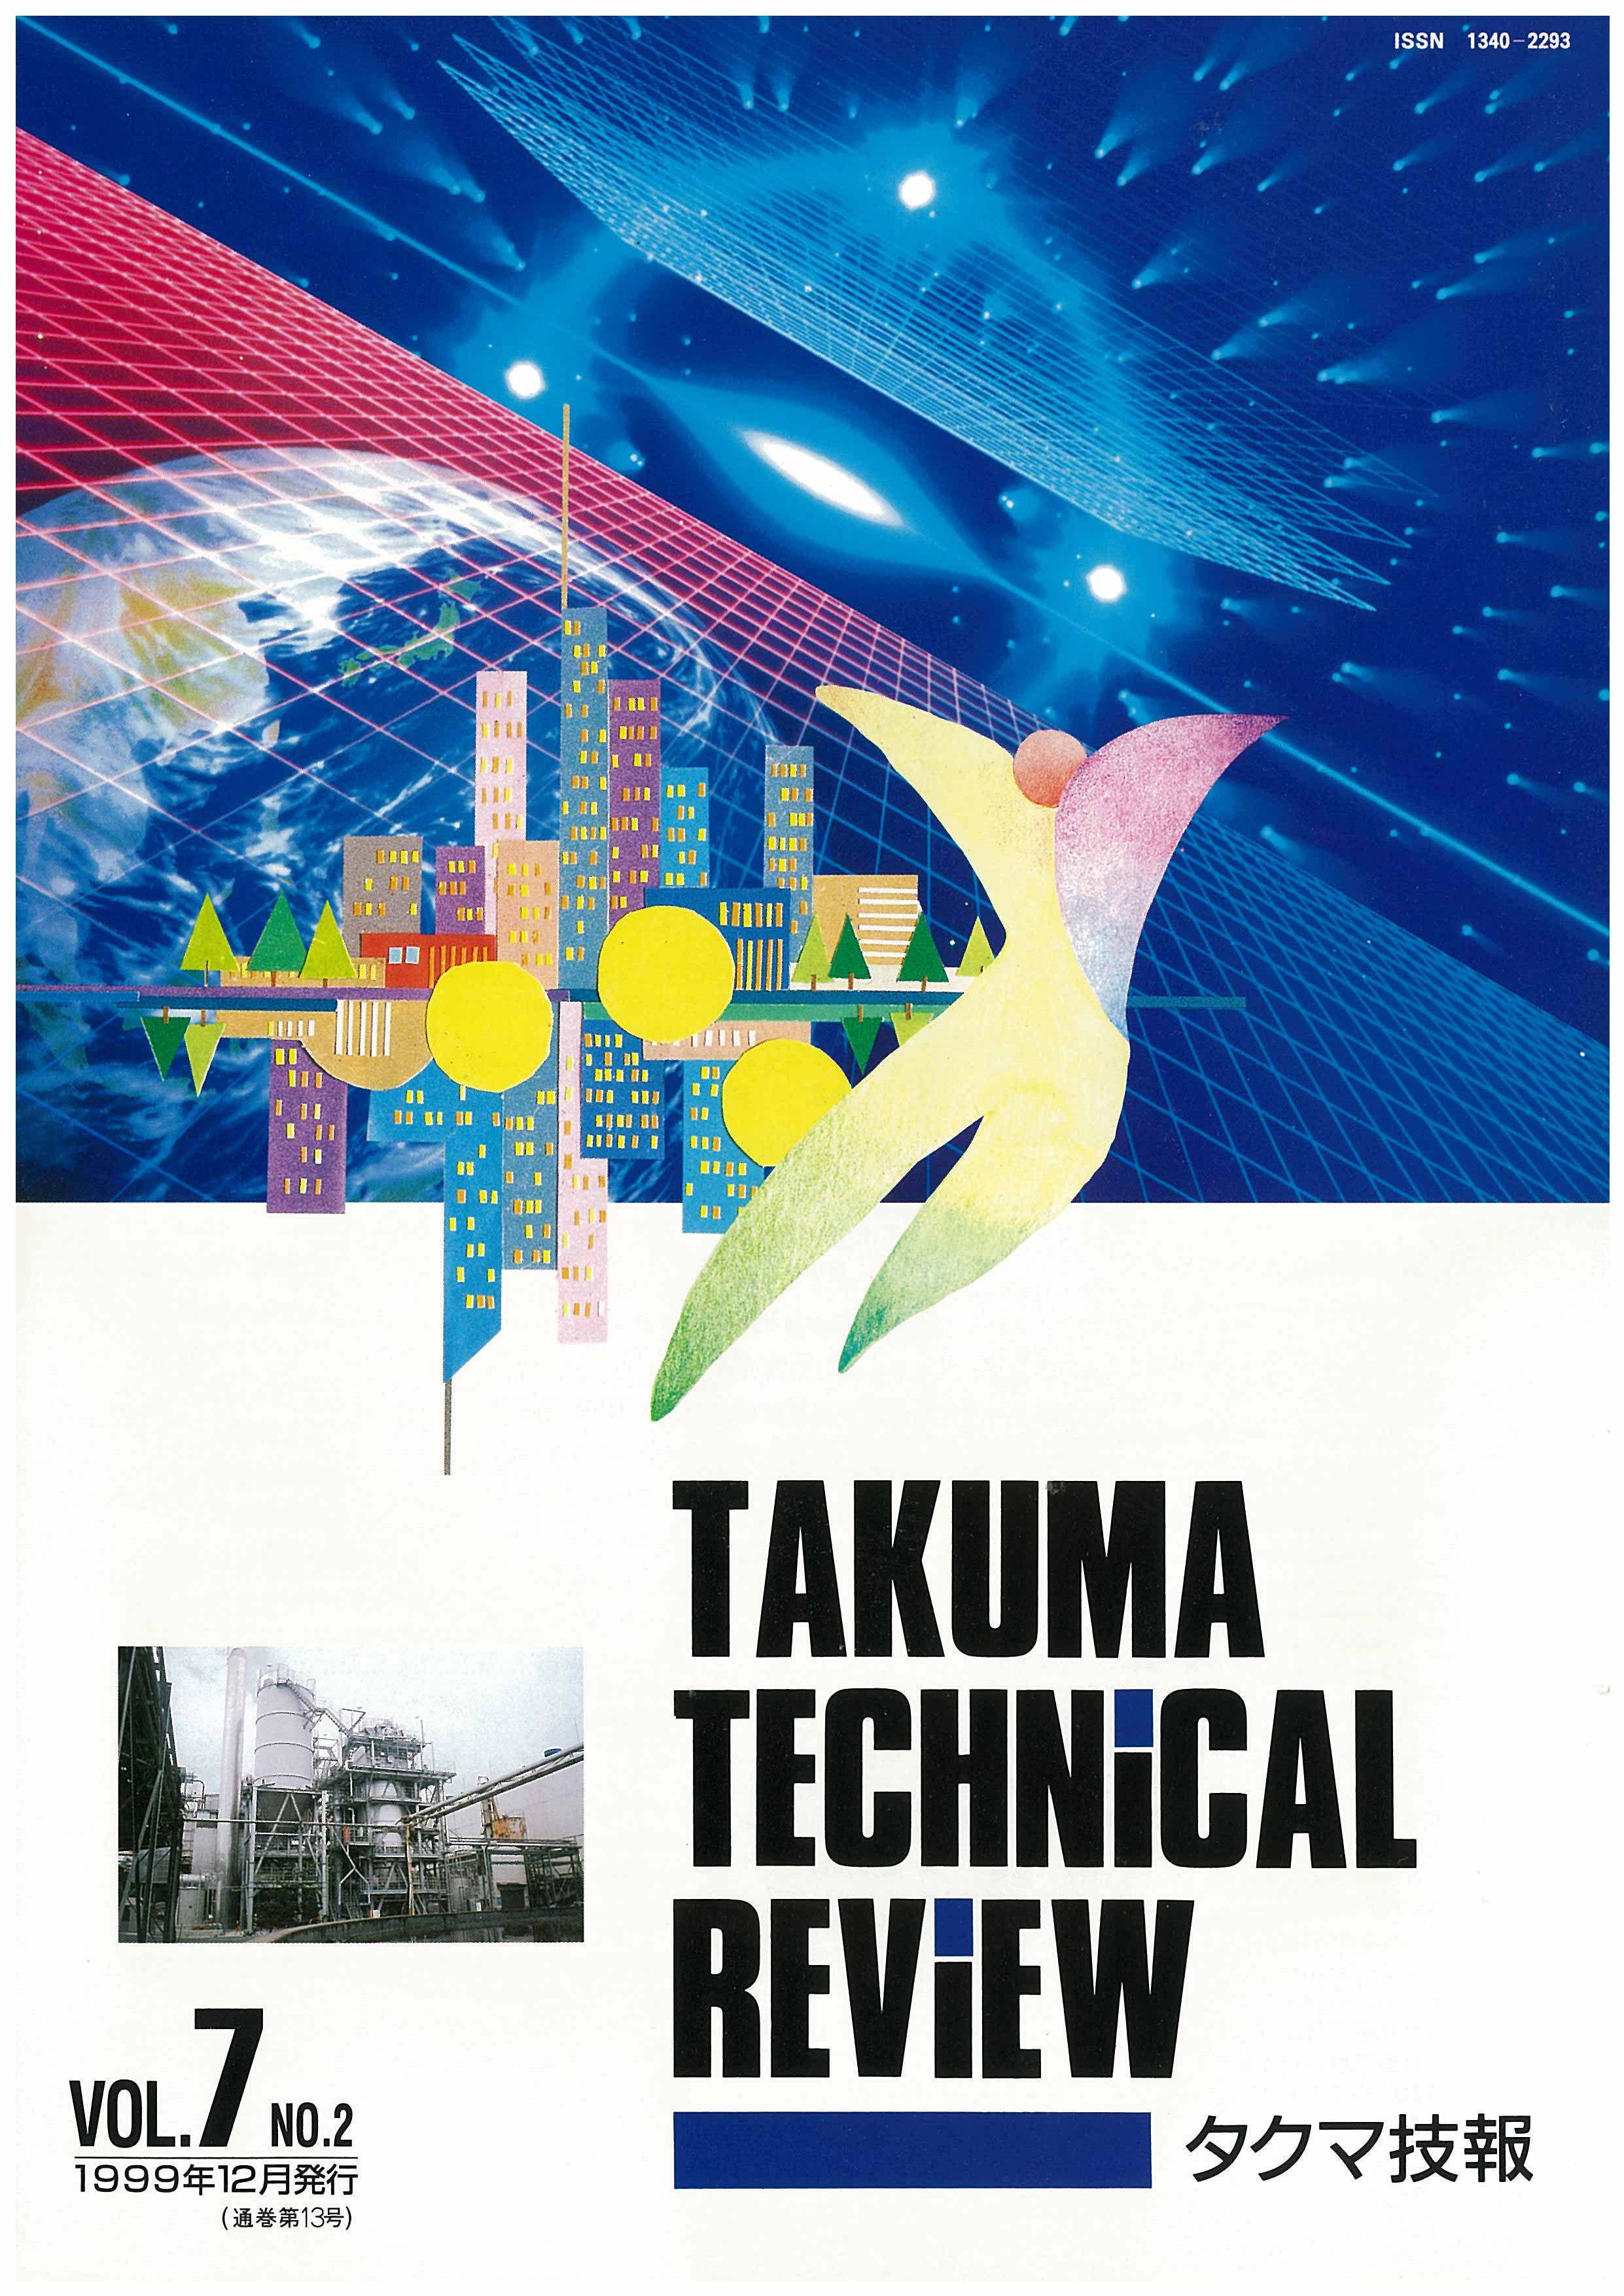 タクマ技報 VOL.7 NO.2（1999年12月発行）